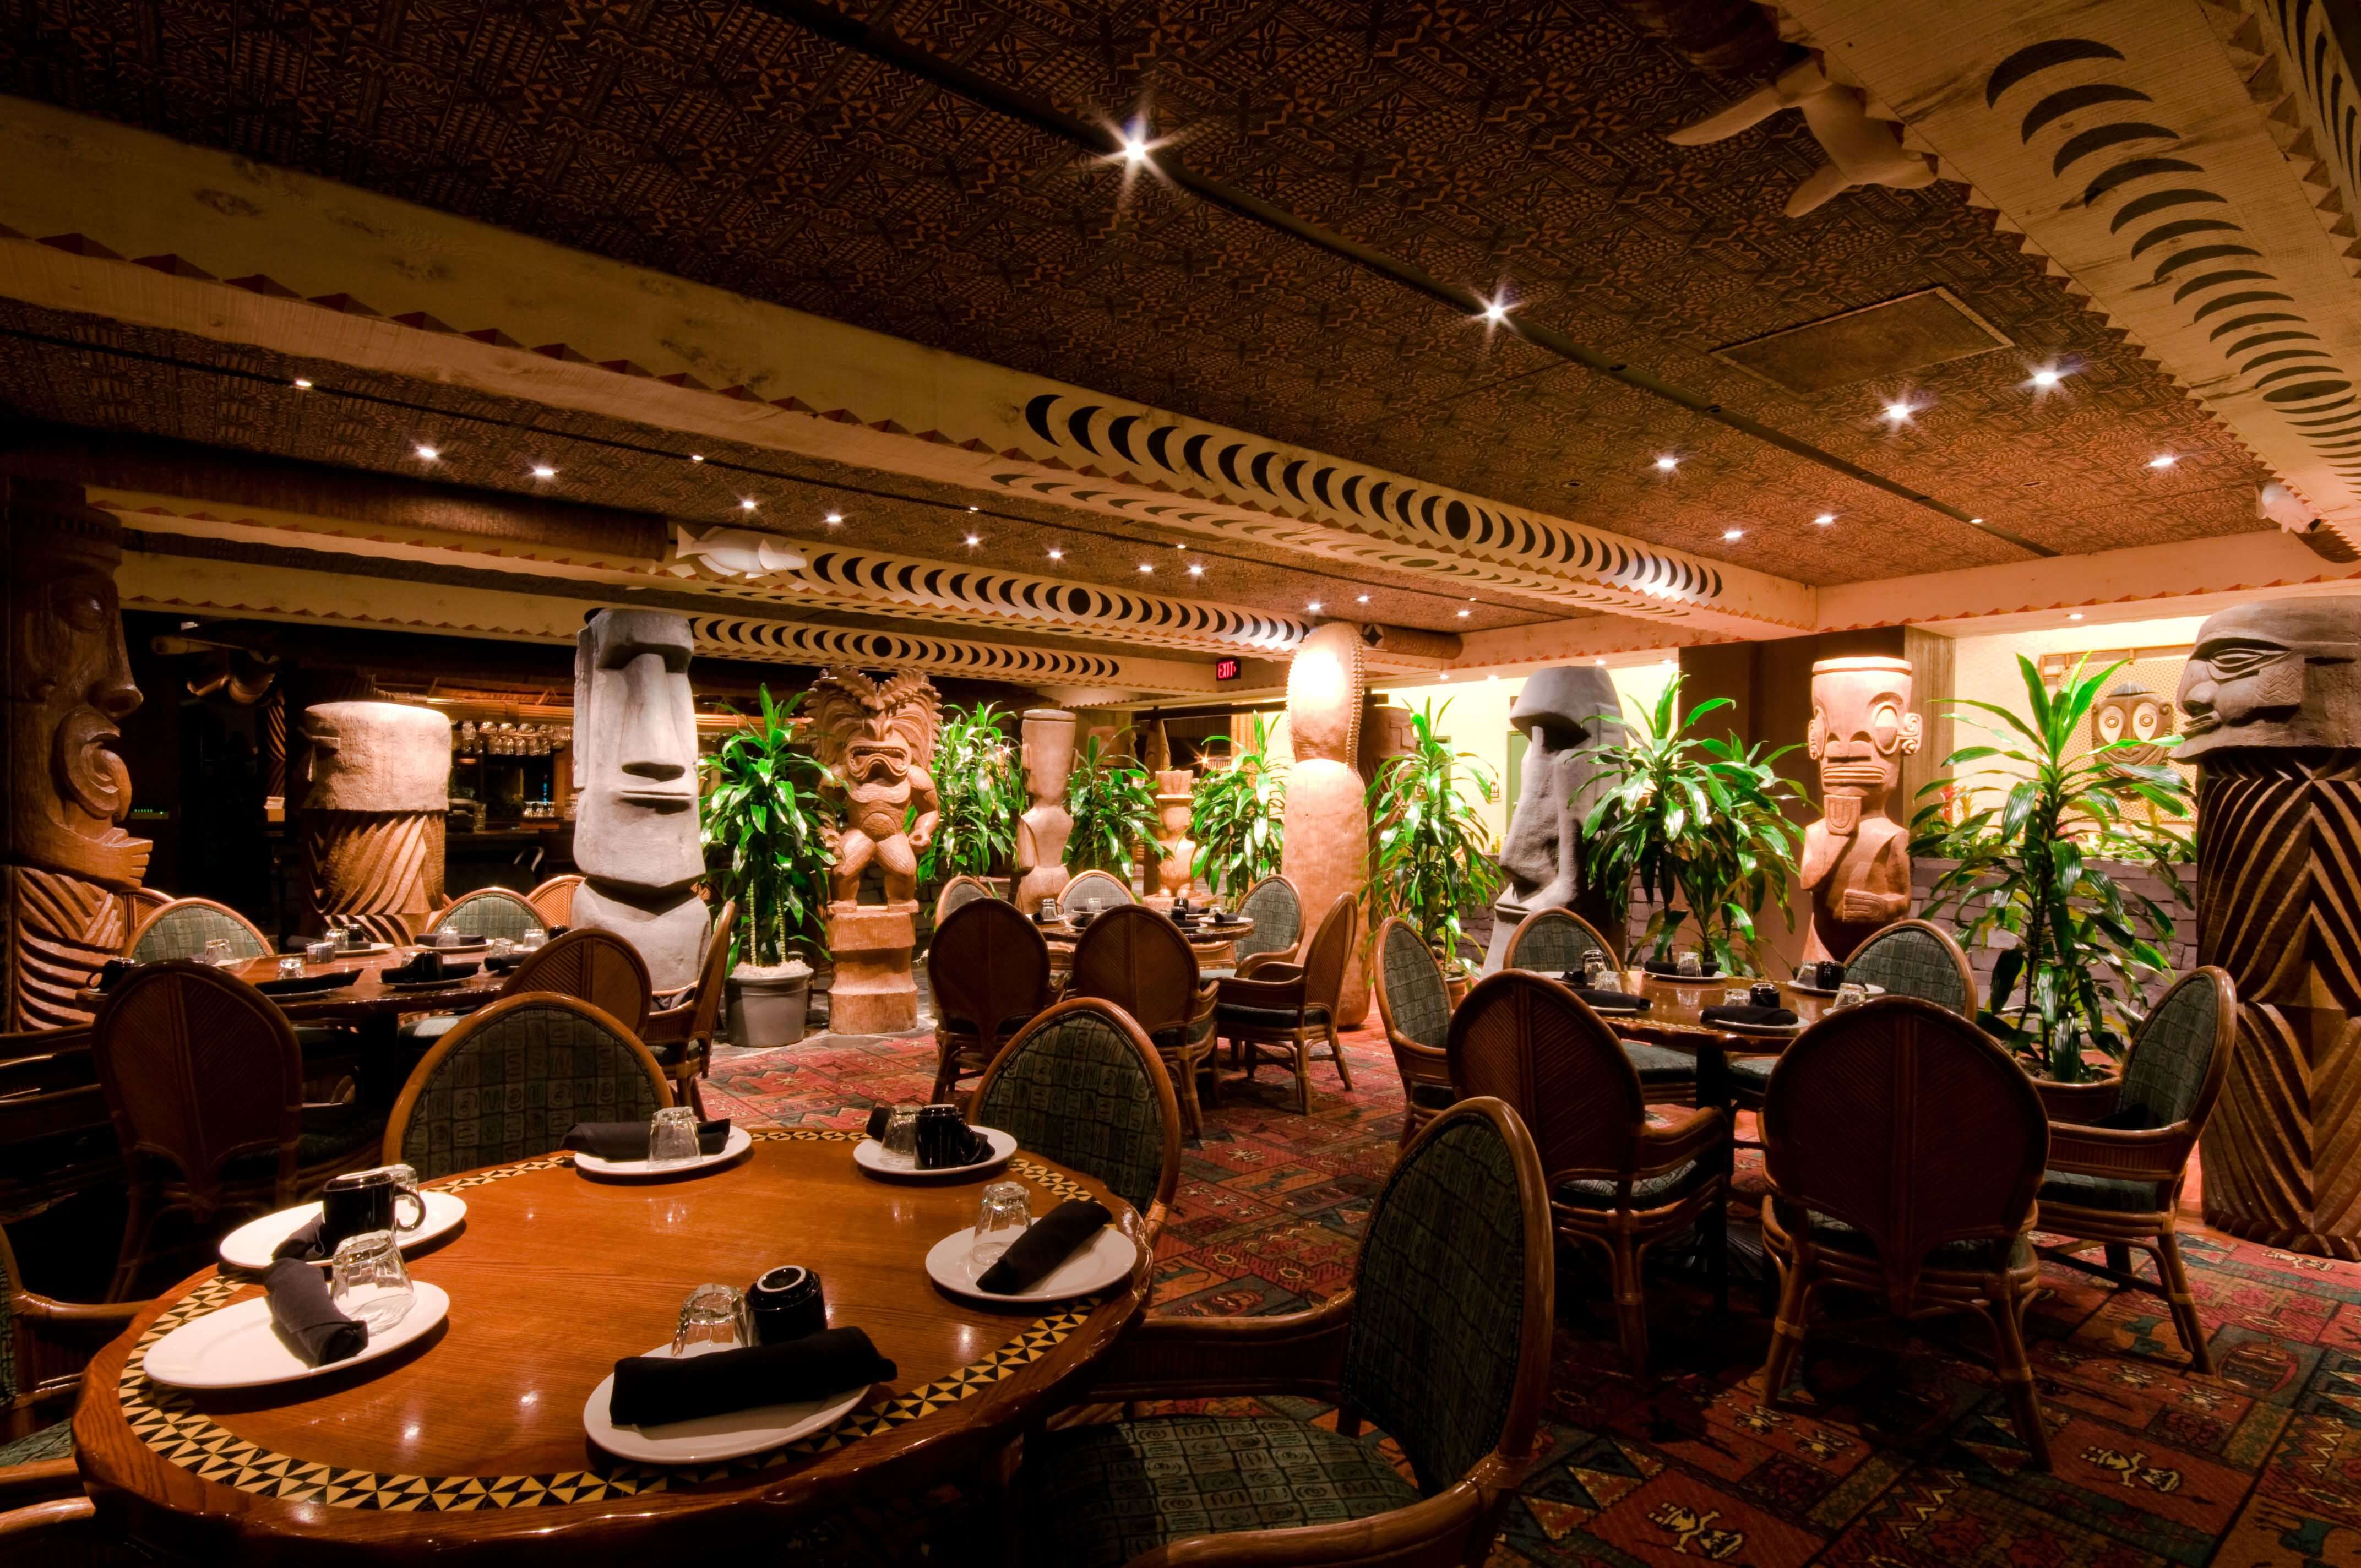 10 restaurantes de resorts na Disney em Orlando